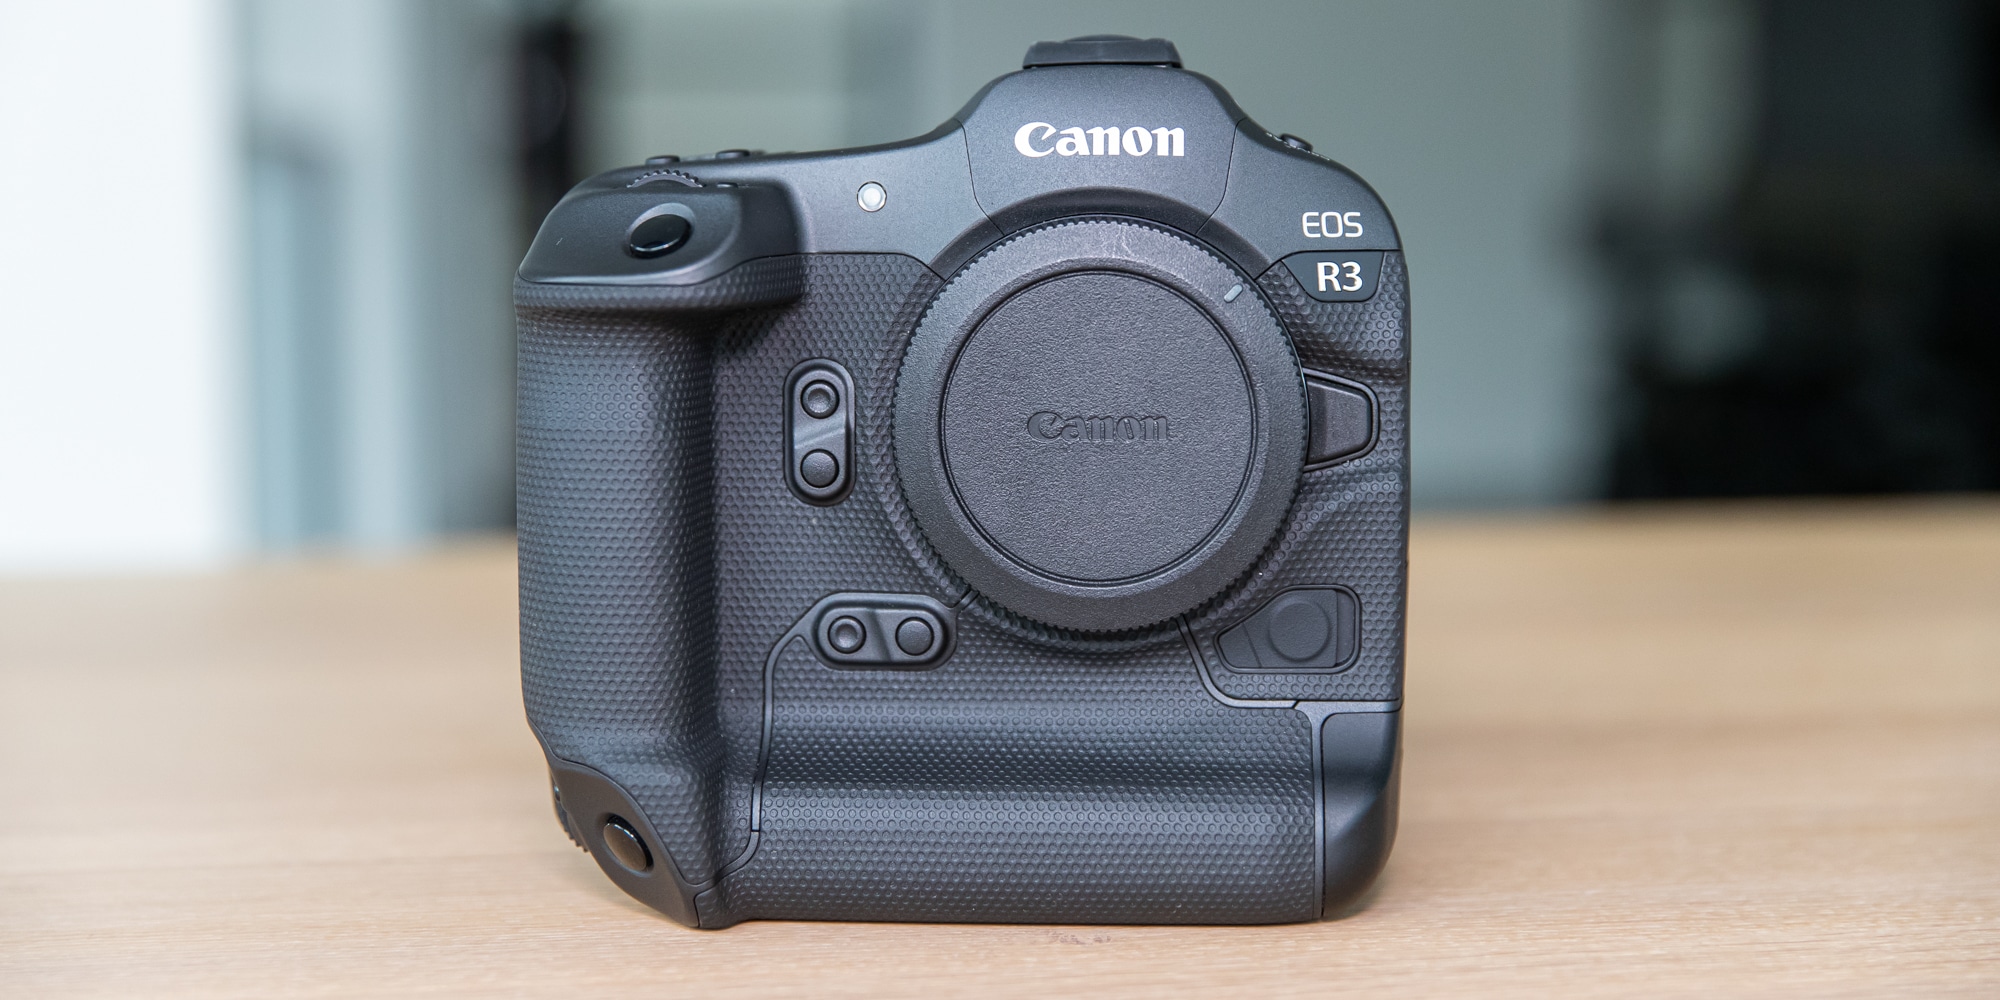 Canon EOS review: uitgebreide review voorbeeldfoto's